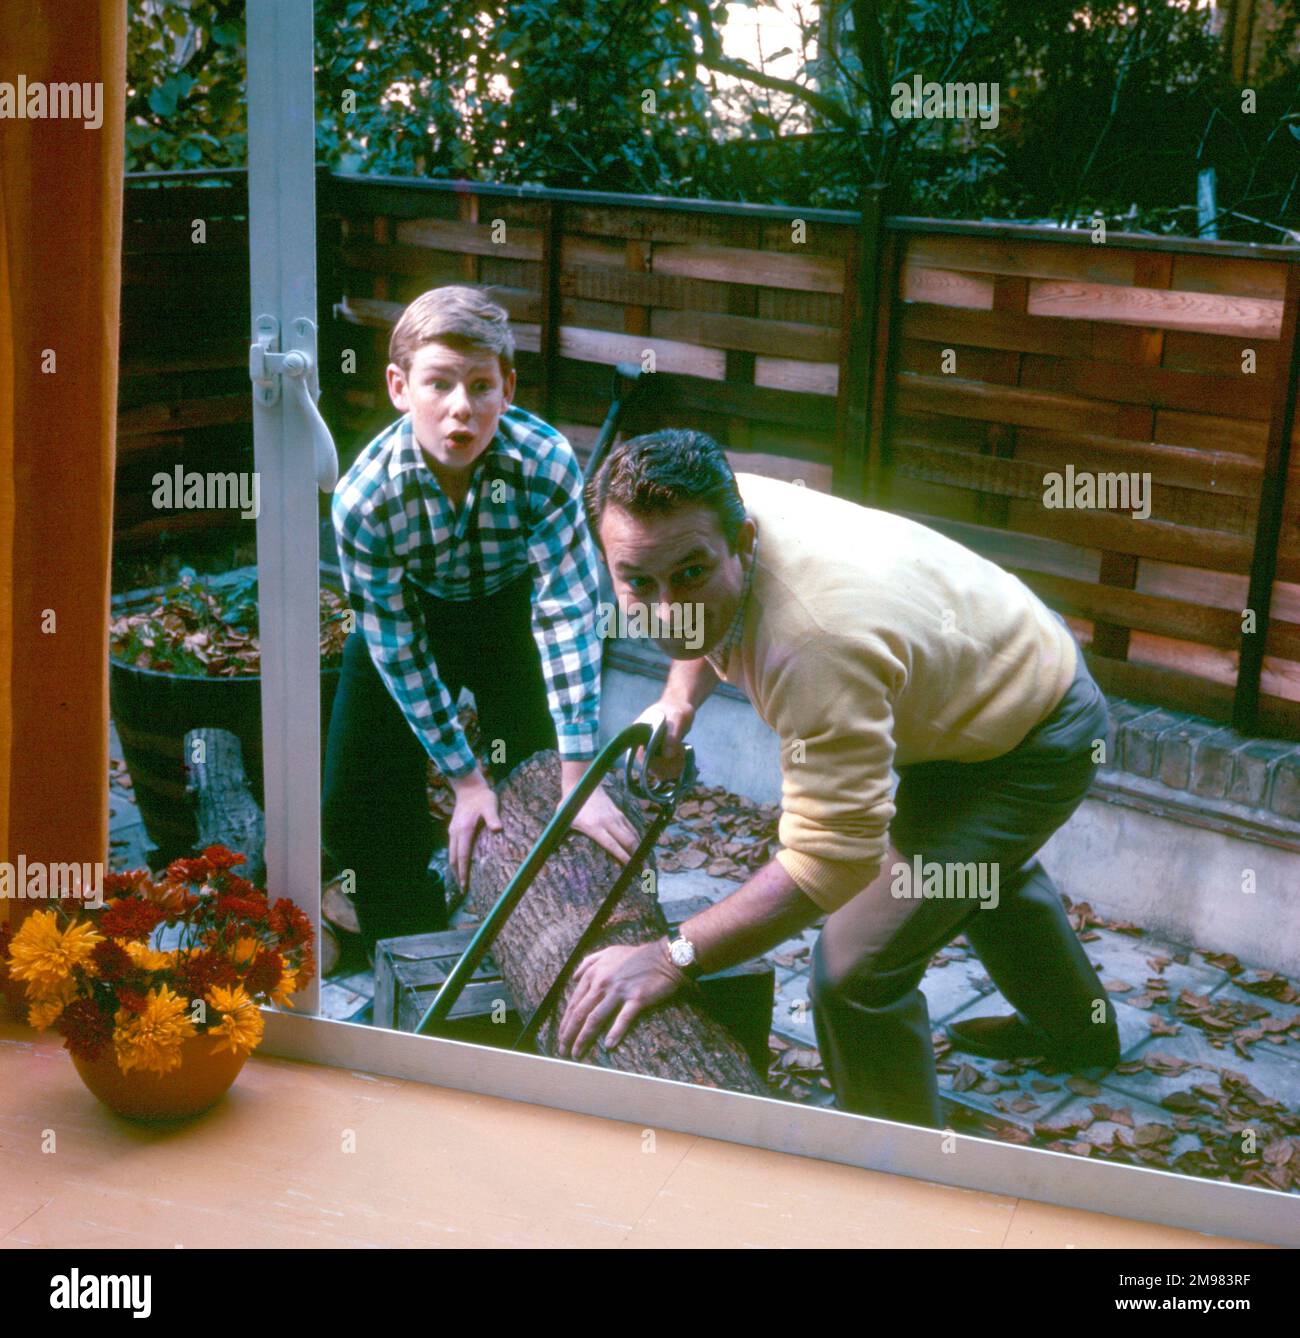 Werbung für Ross Frozen Foods - Vater und Sohn sägen einen Baumstamm im Garten. Stockfoto